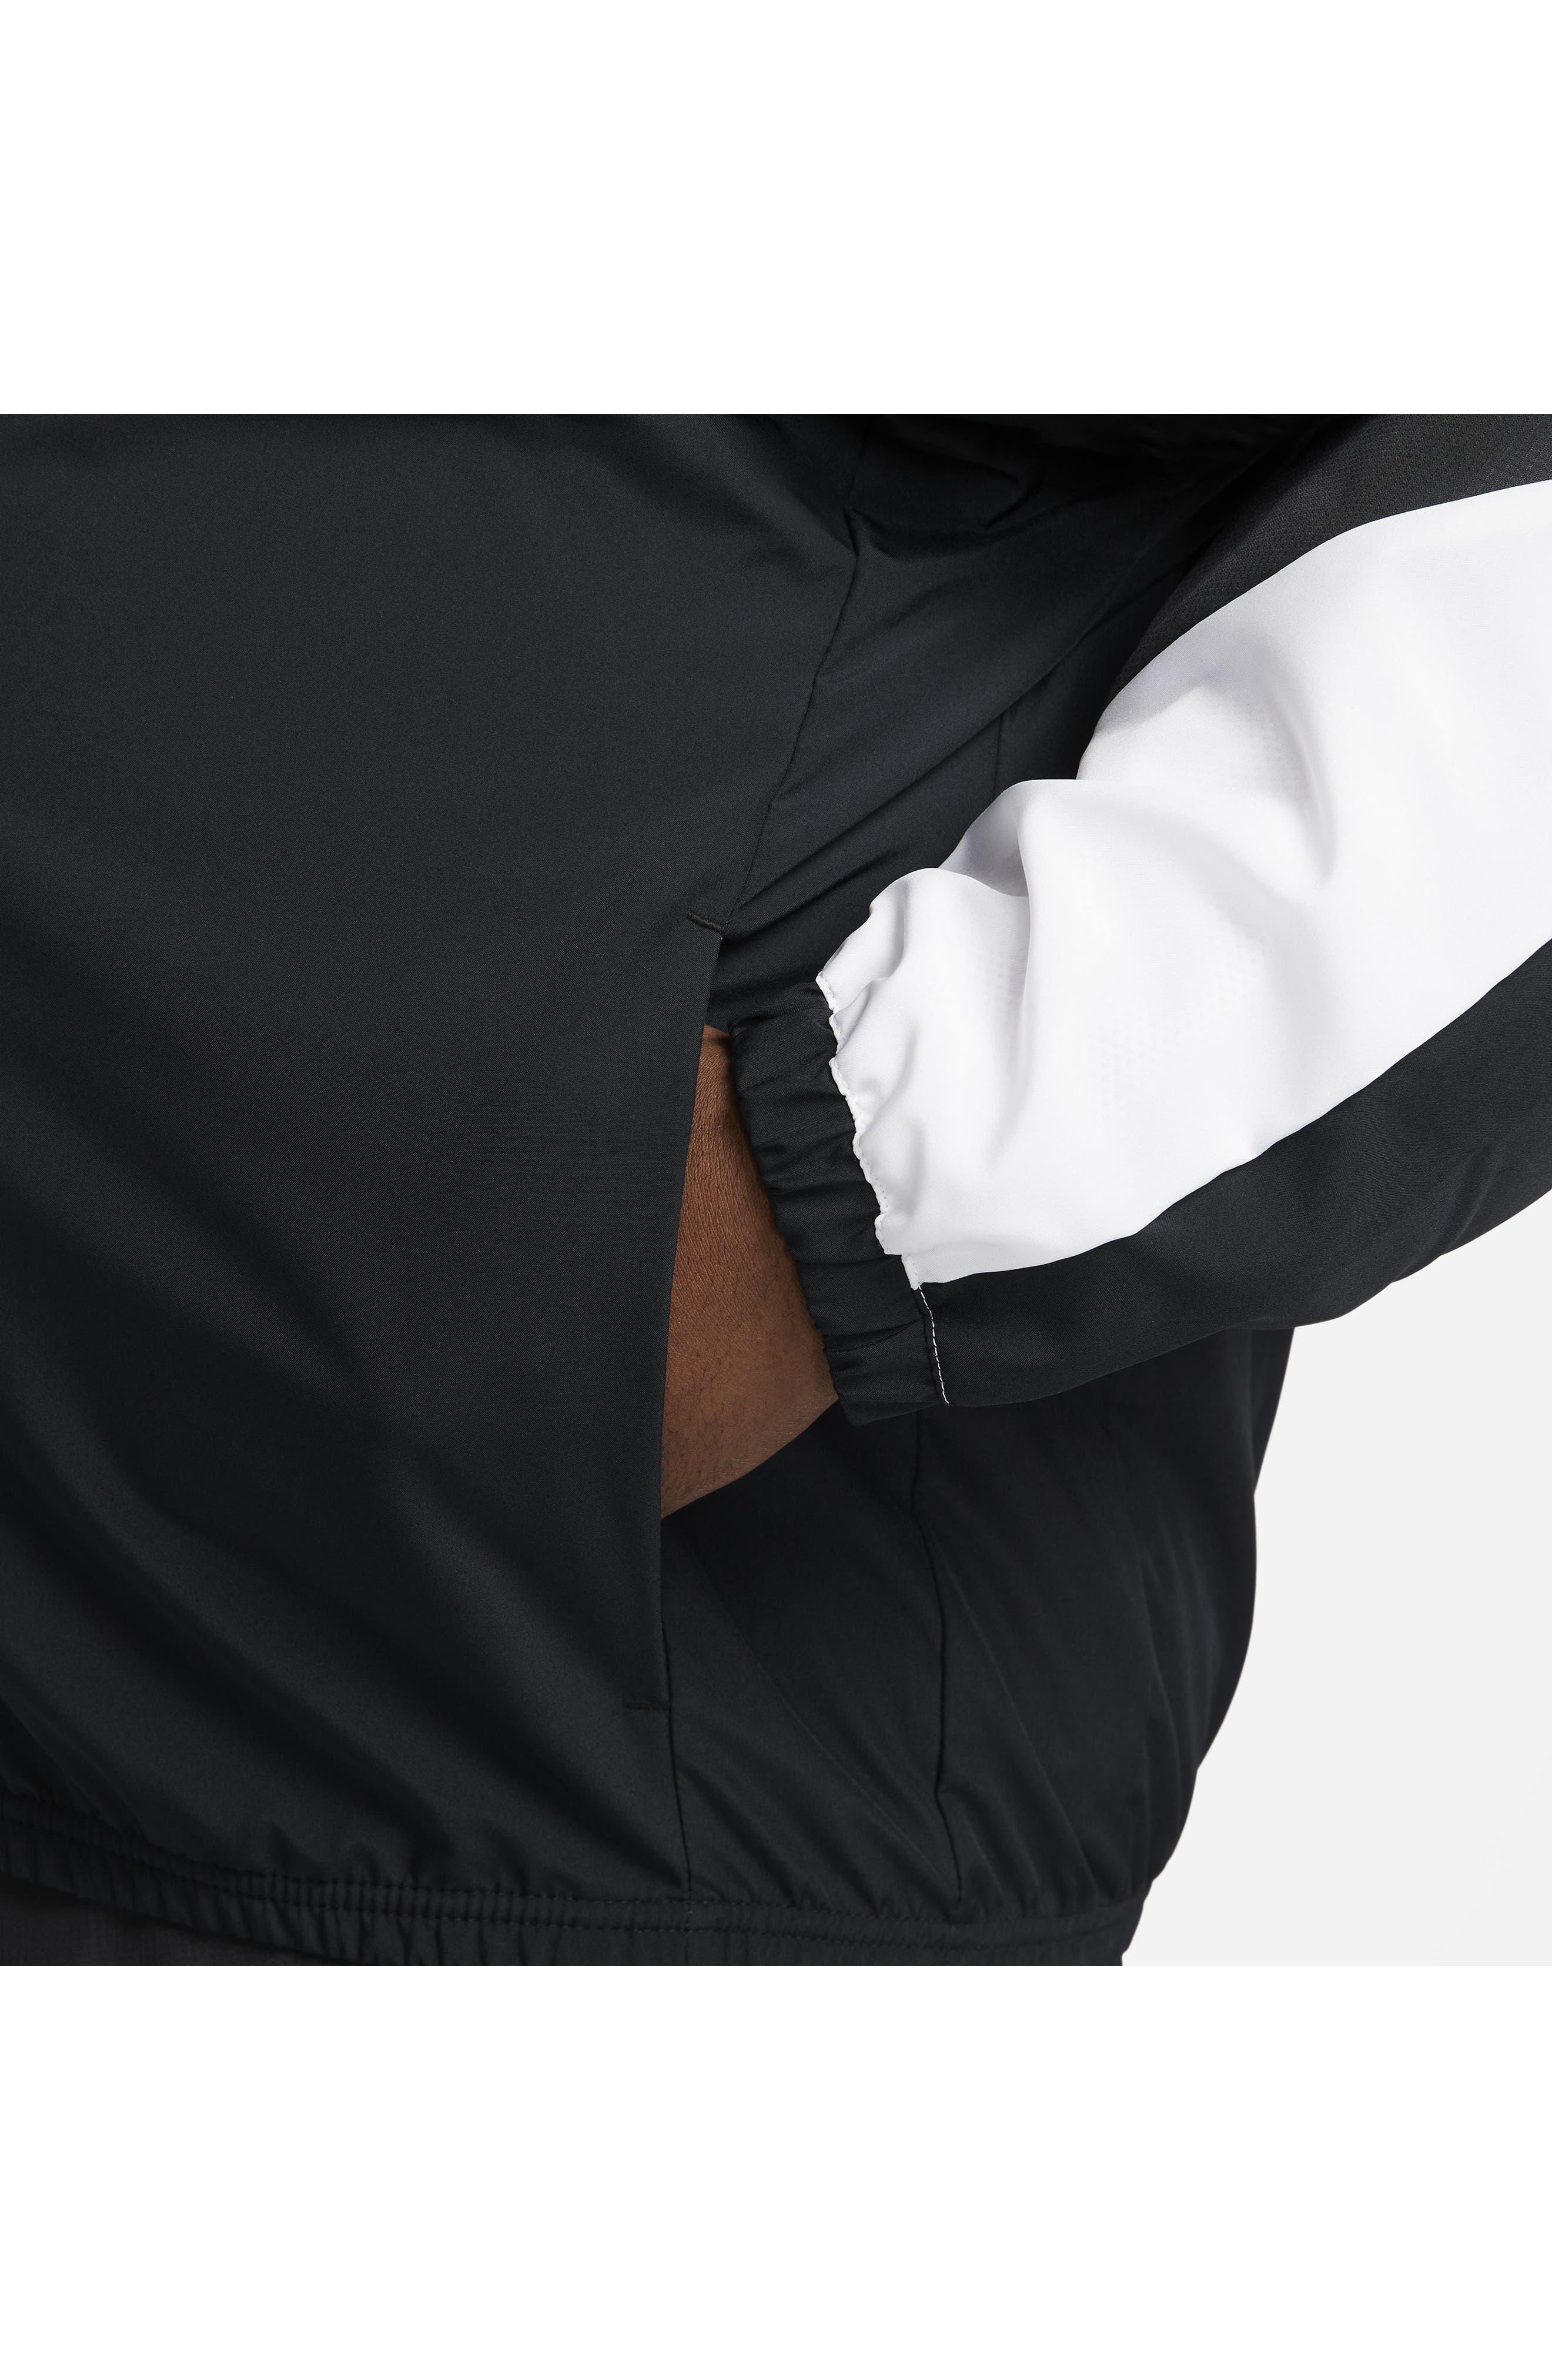 Nike Basketball Starting 5 Jacket in Black for Men